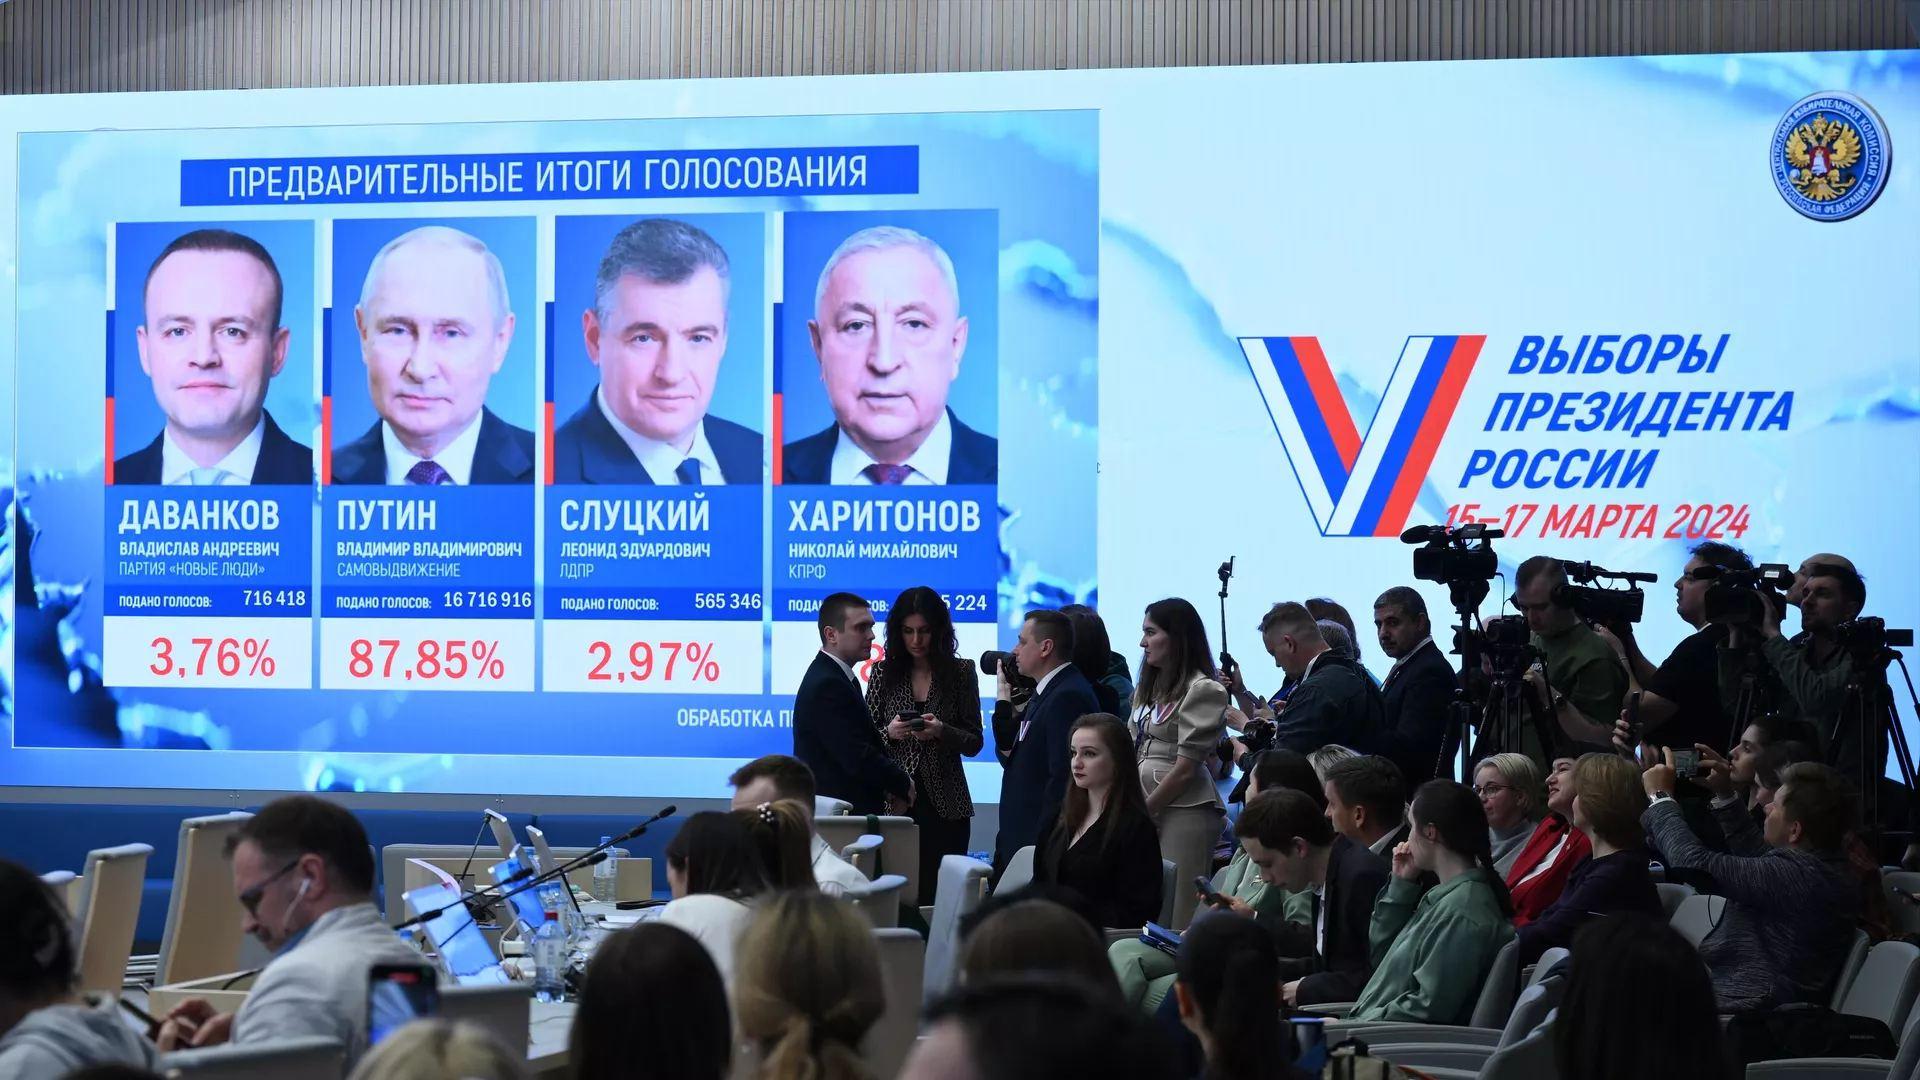 Ռուսիոյ նախագահական ընտրութիւններուն Փութին՝ յաղթական. Ան հաւաքած է  ձայներու 87,3 տոկոսը